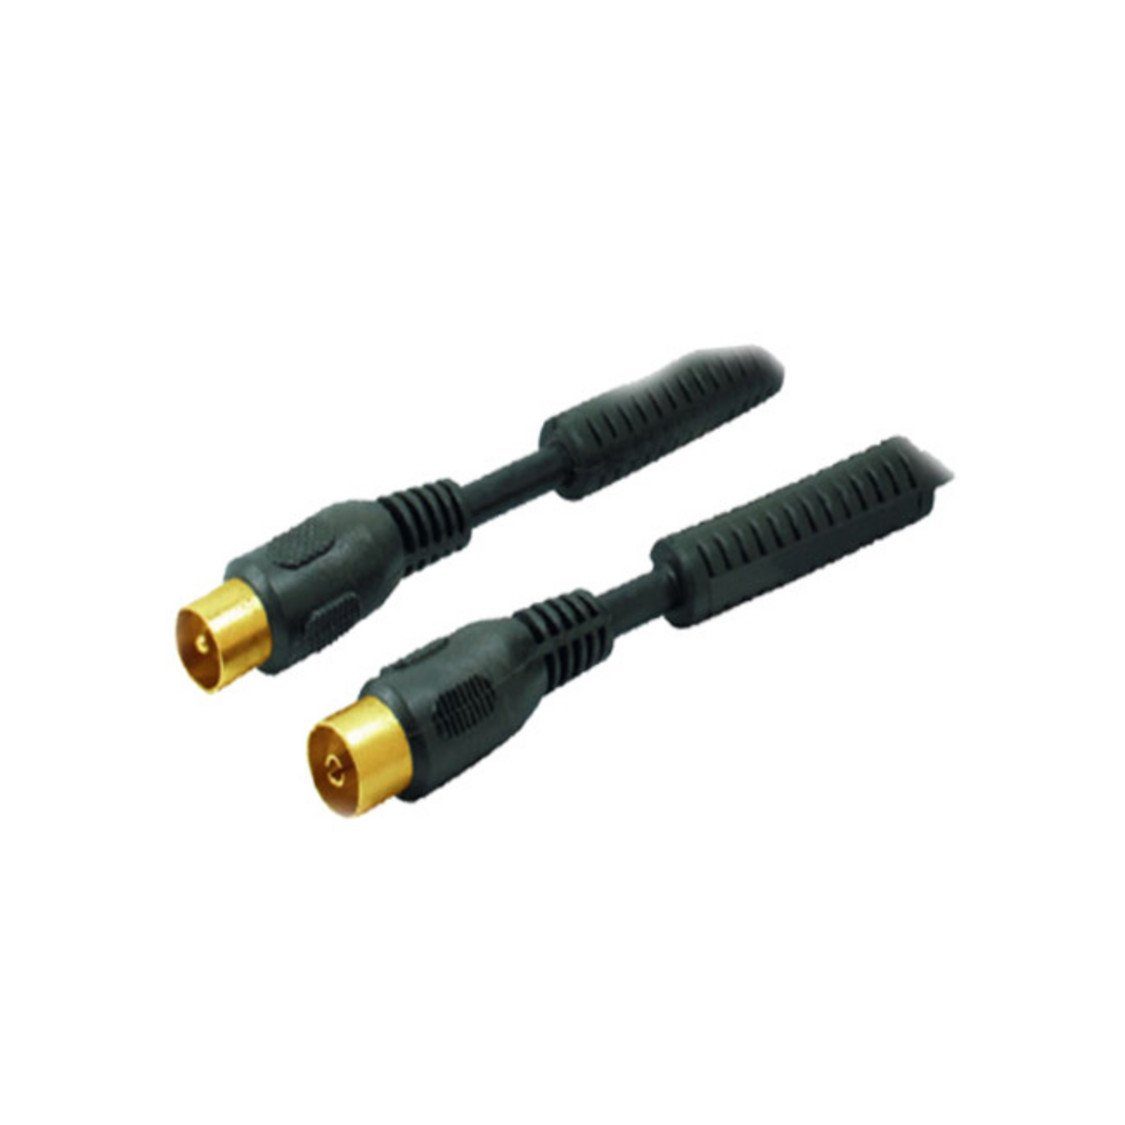 S/CONN maximum schw >100dB Ferrit Schwarz Antennenkabel m. Koax-Kabelverbinder vergoldet 5m connectivity®